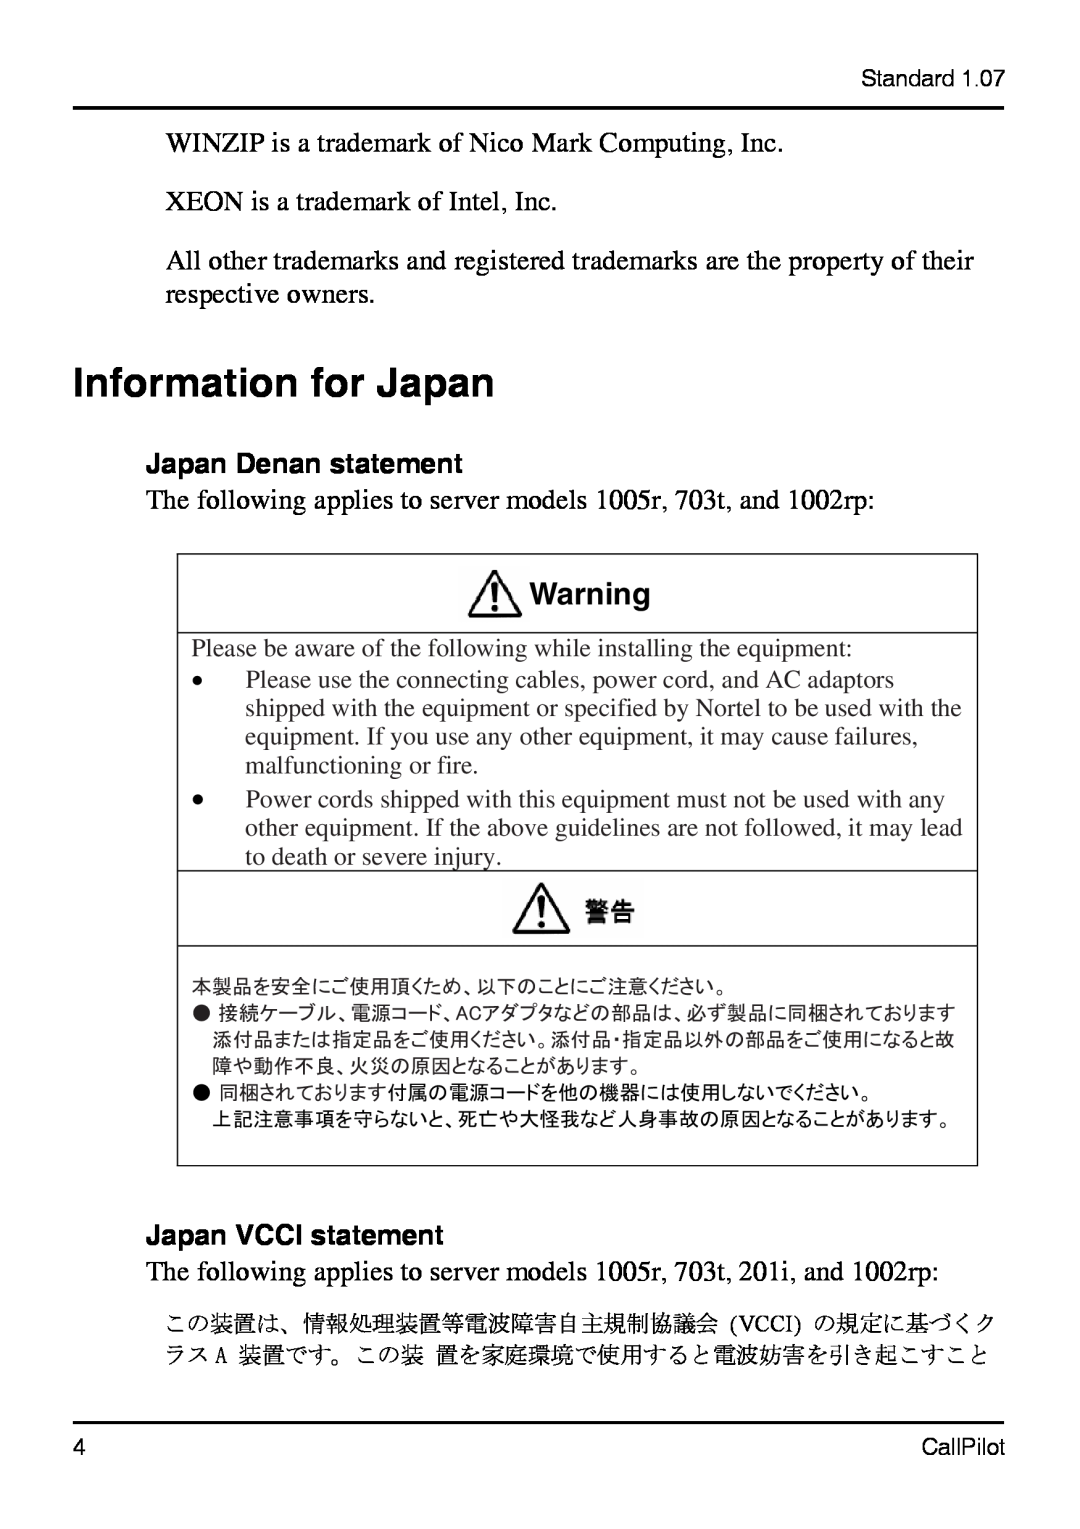 Nortel Networks 1002rp manual Information for Japan, Japan Denan statement, Japan VCCI statement 